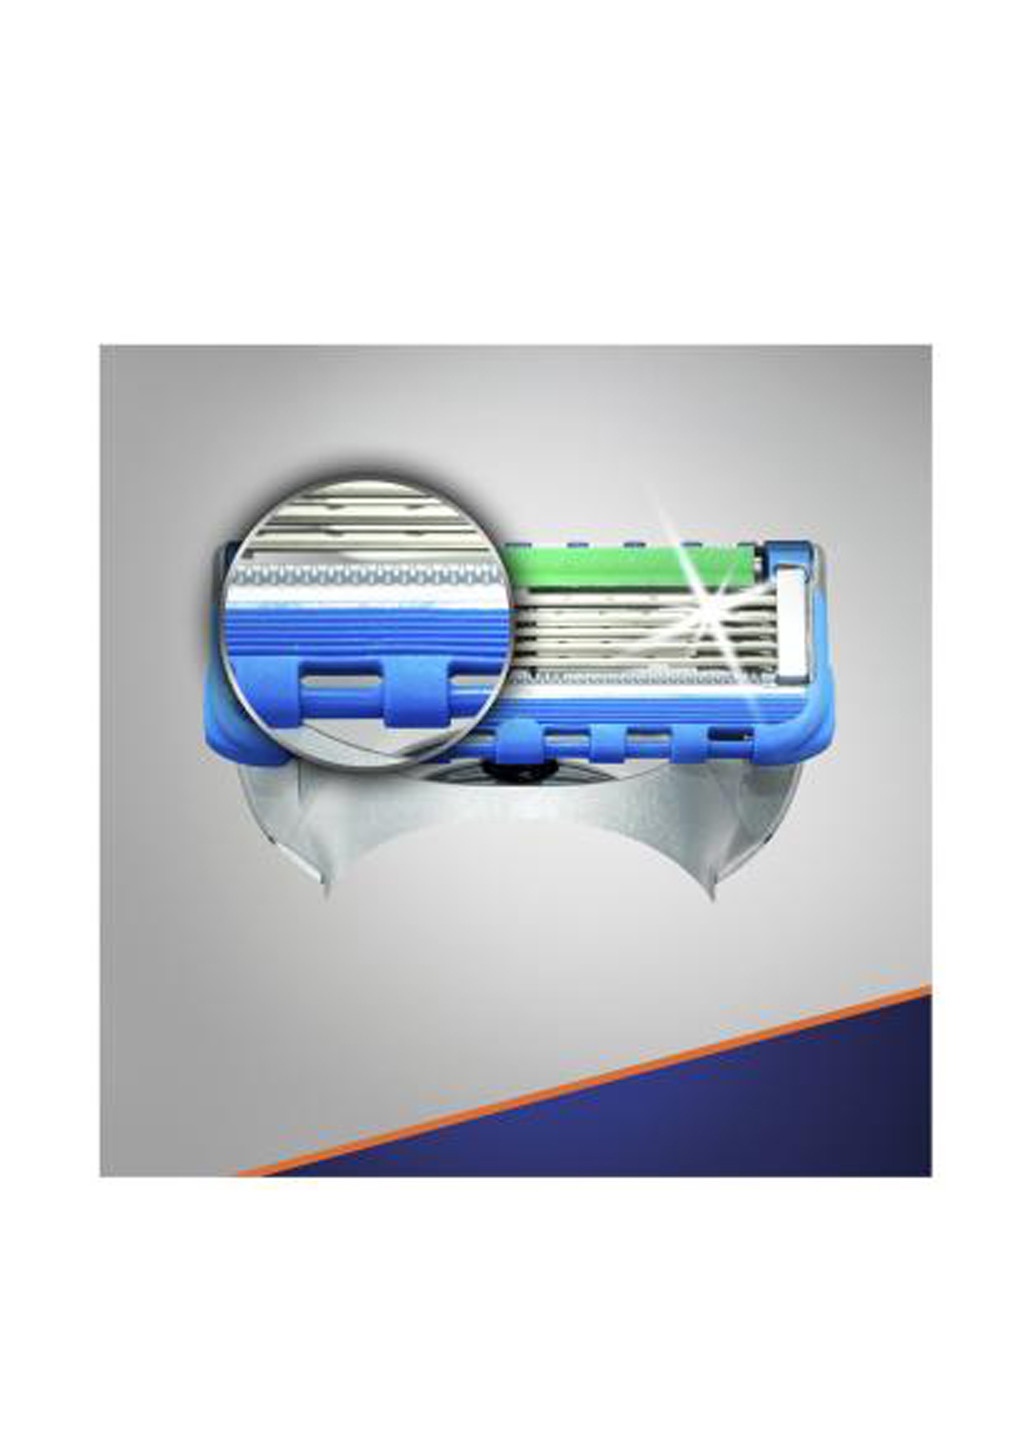 Змінні картриджі для гоління Fusion5 ProGlide Power (2 шт.) Gillette (138200756)